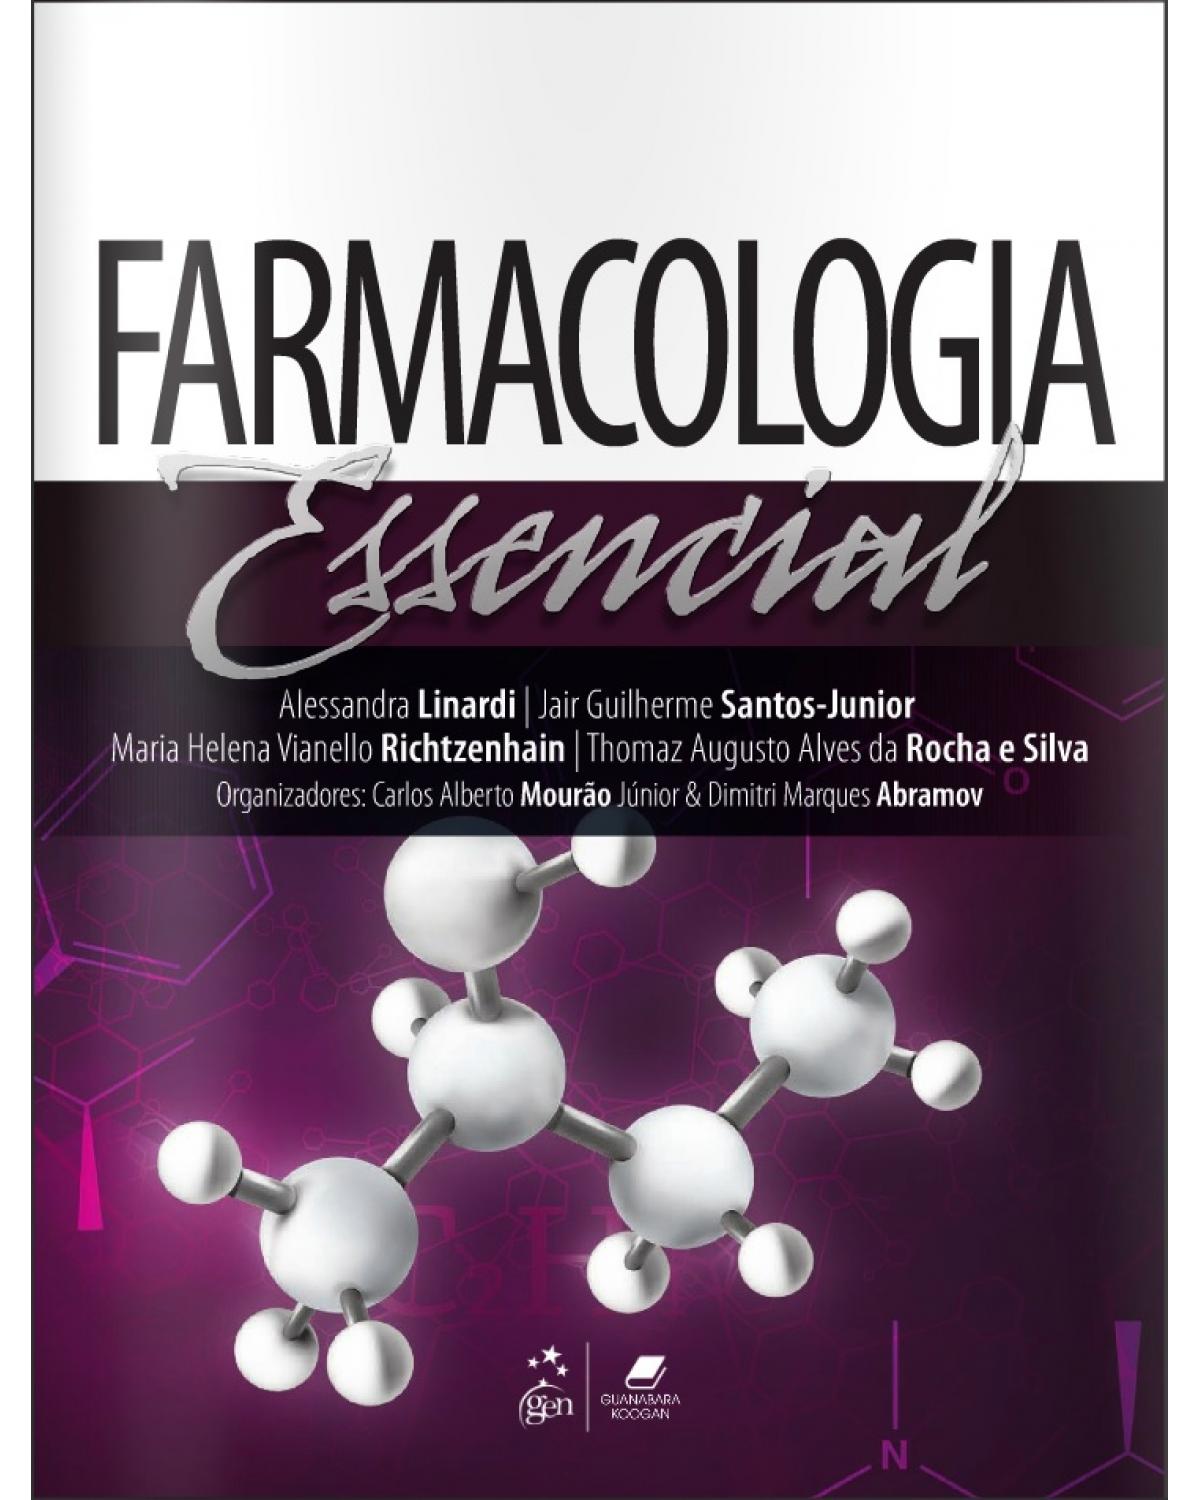 Farmacologia essencial - 1ª Edição | 2016